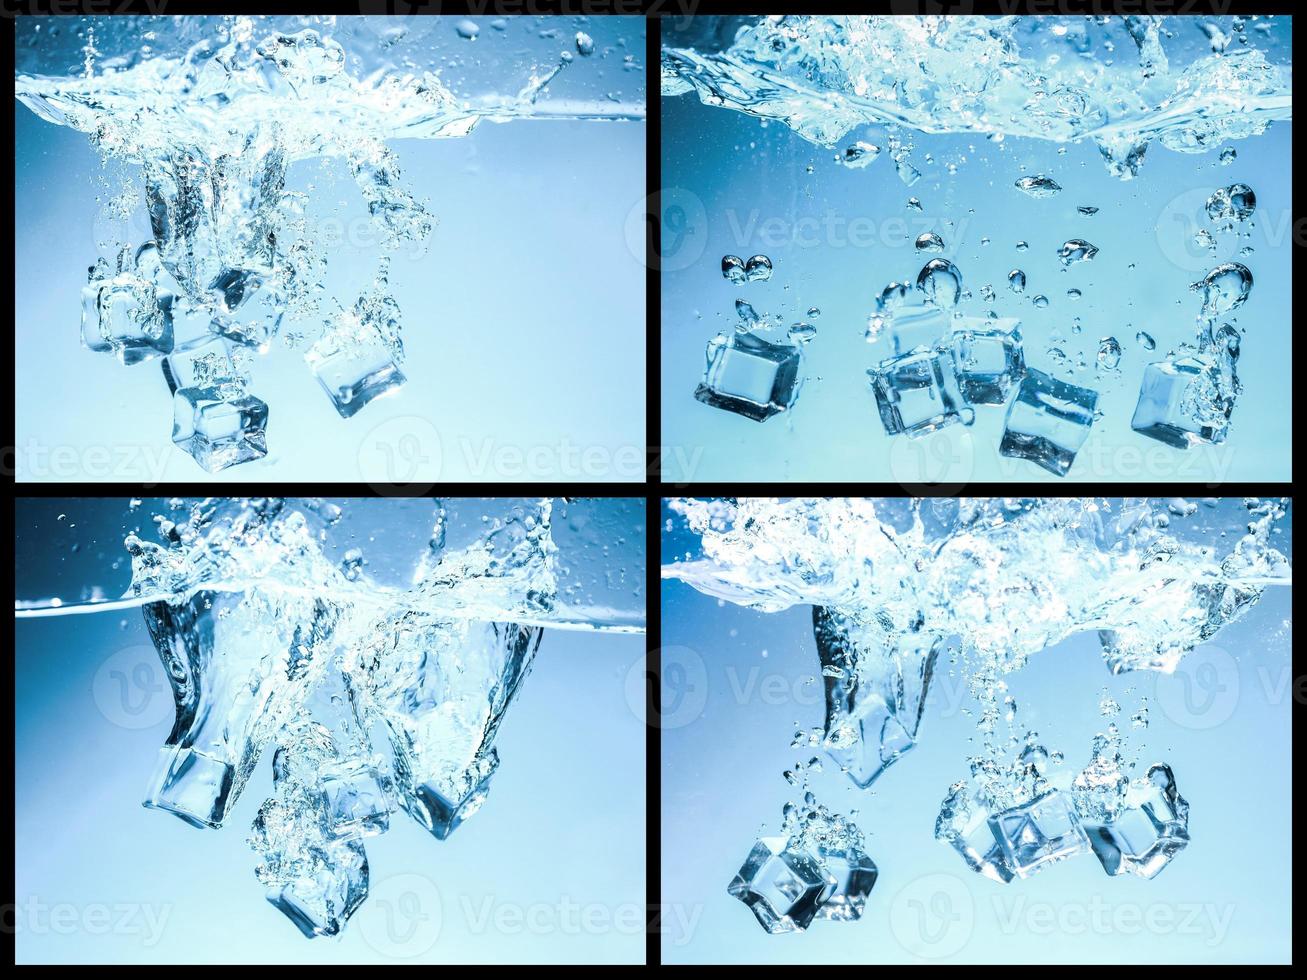 colección de cubitos de hielo caídos en agua potable, refrescante. foto